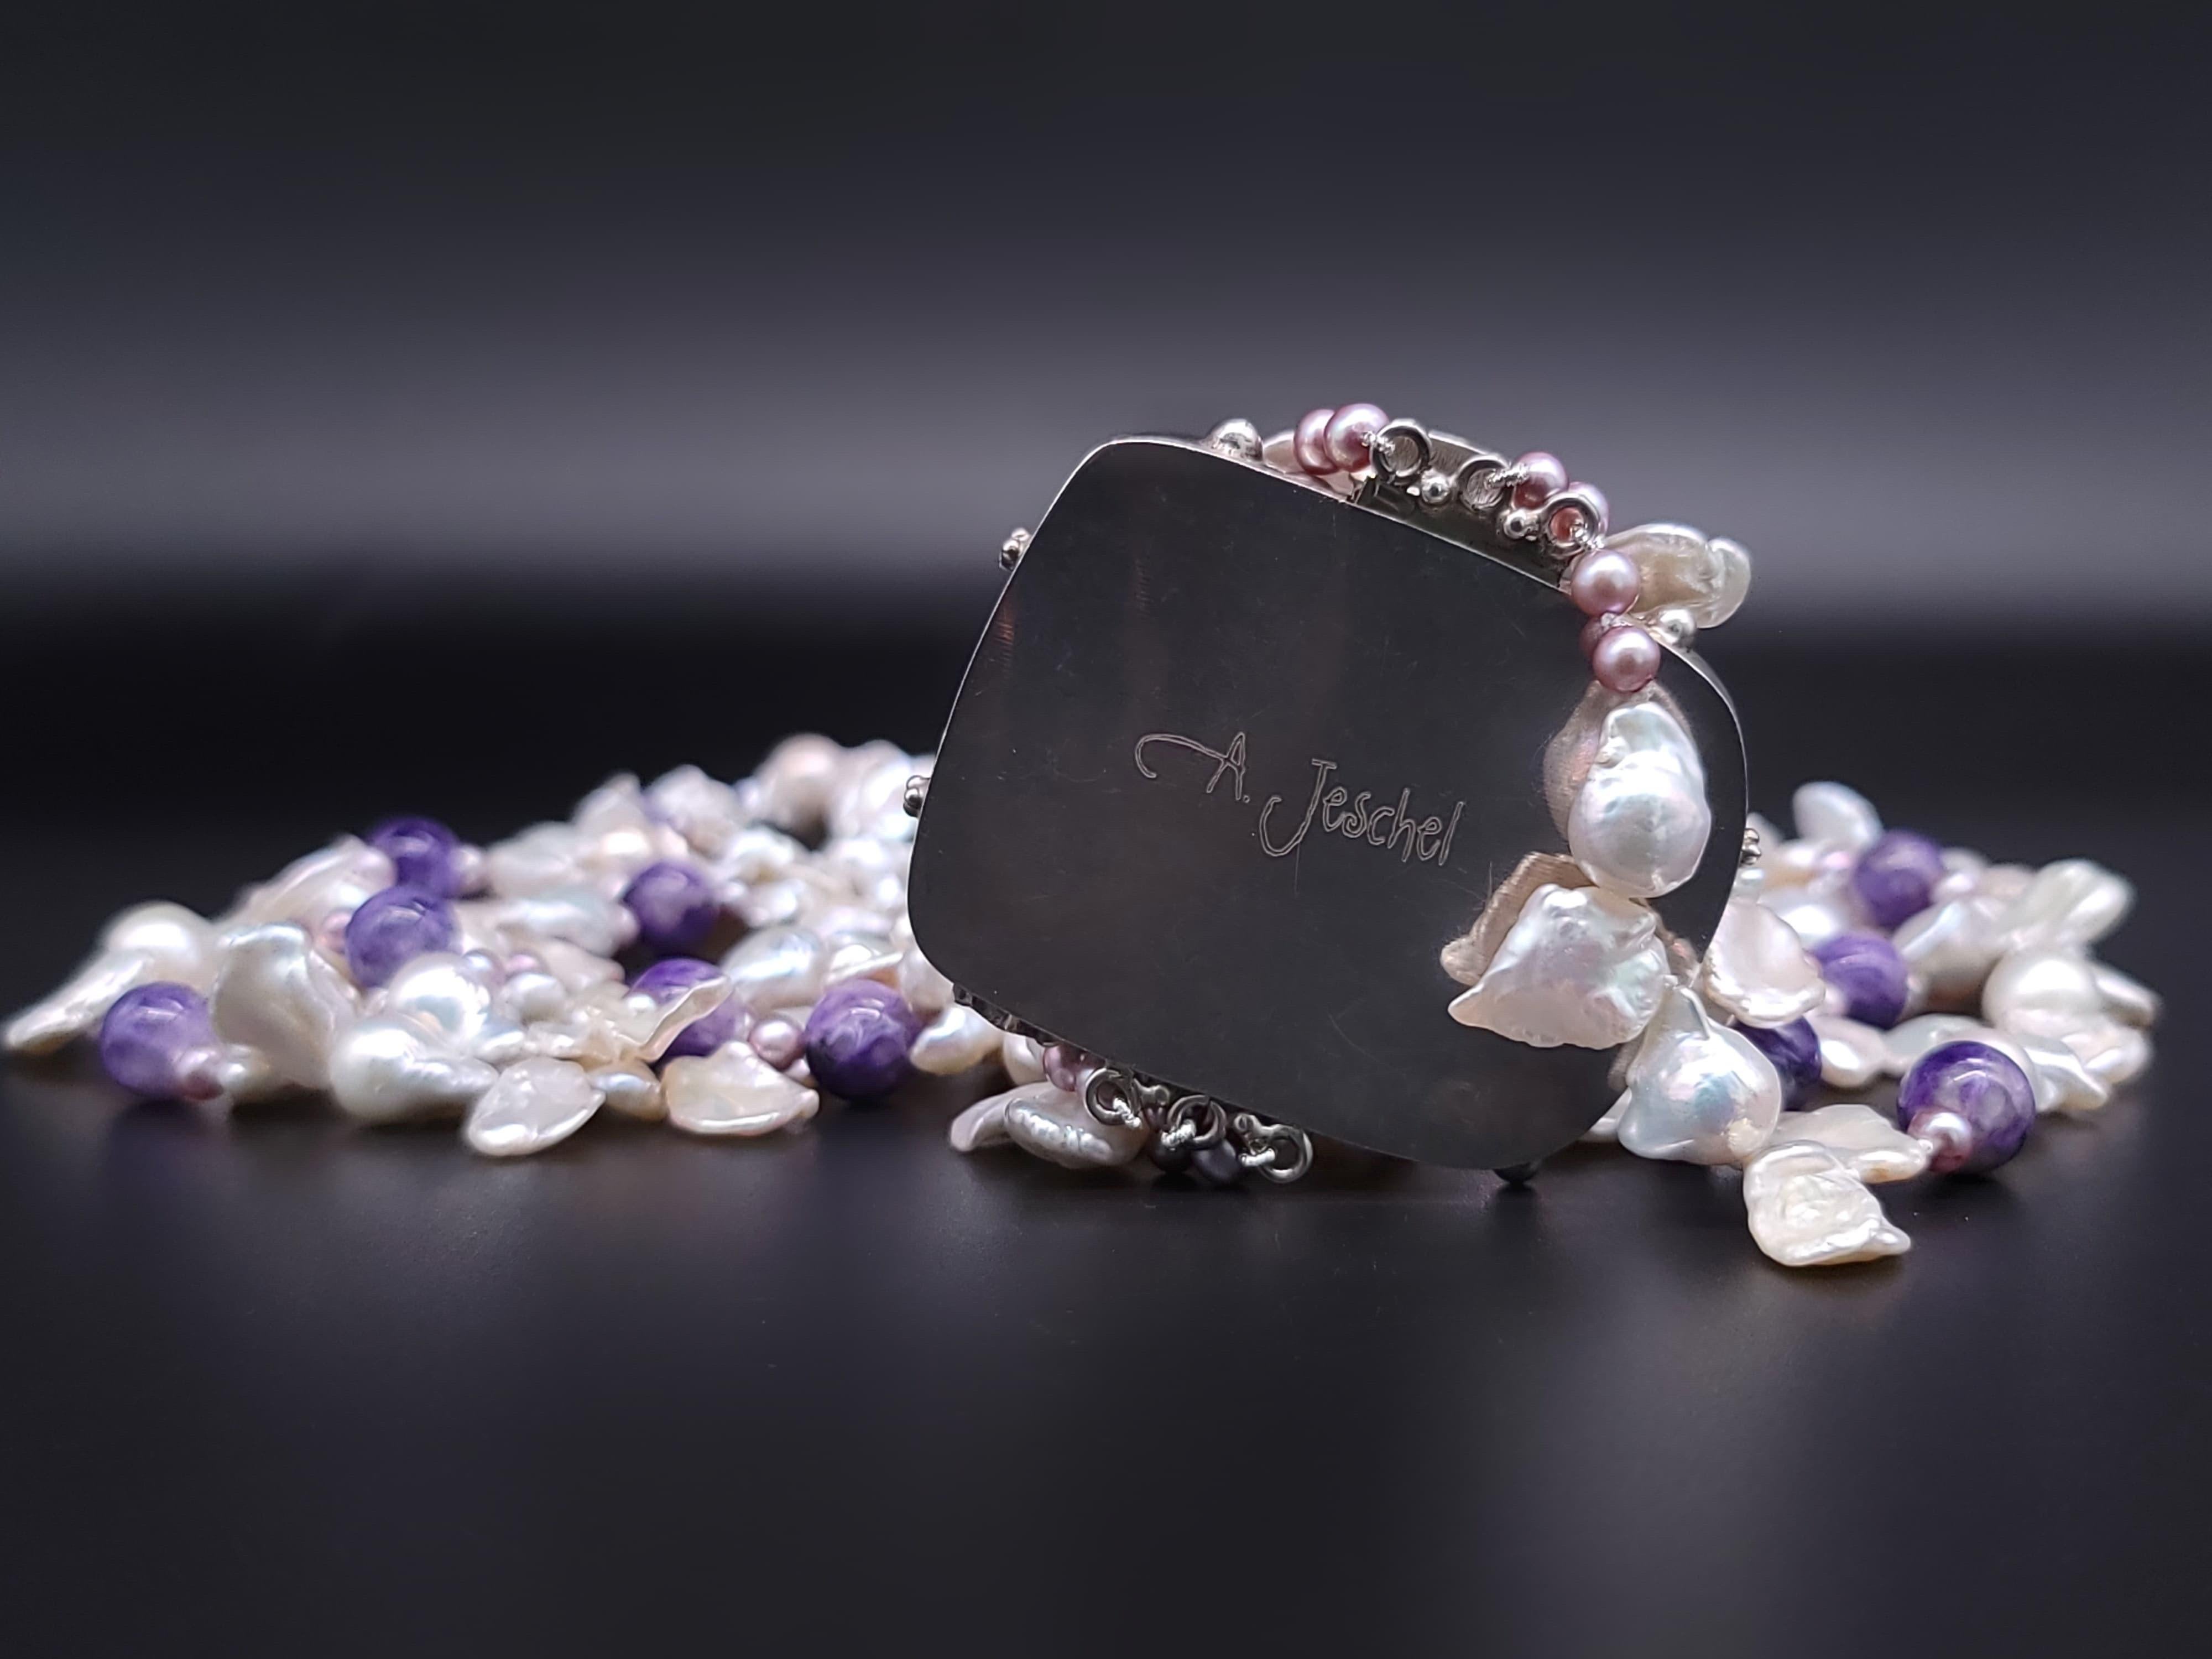 A.Jeschel Luxury Keshy Perlen mit charakteristischem Charoit-Verschluss Halskette. Damen im Angebot